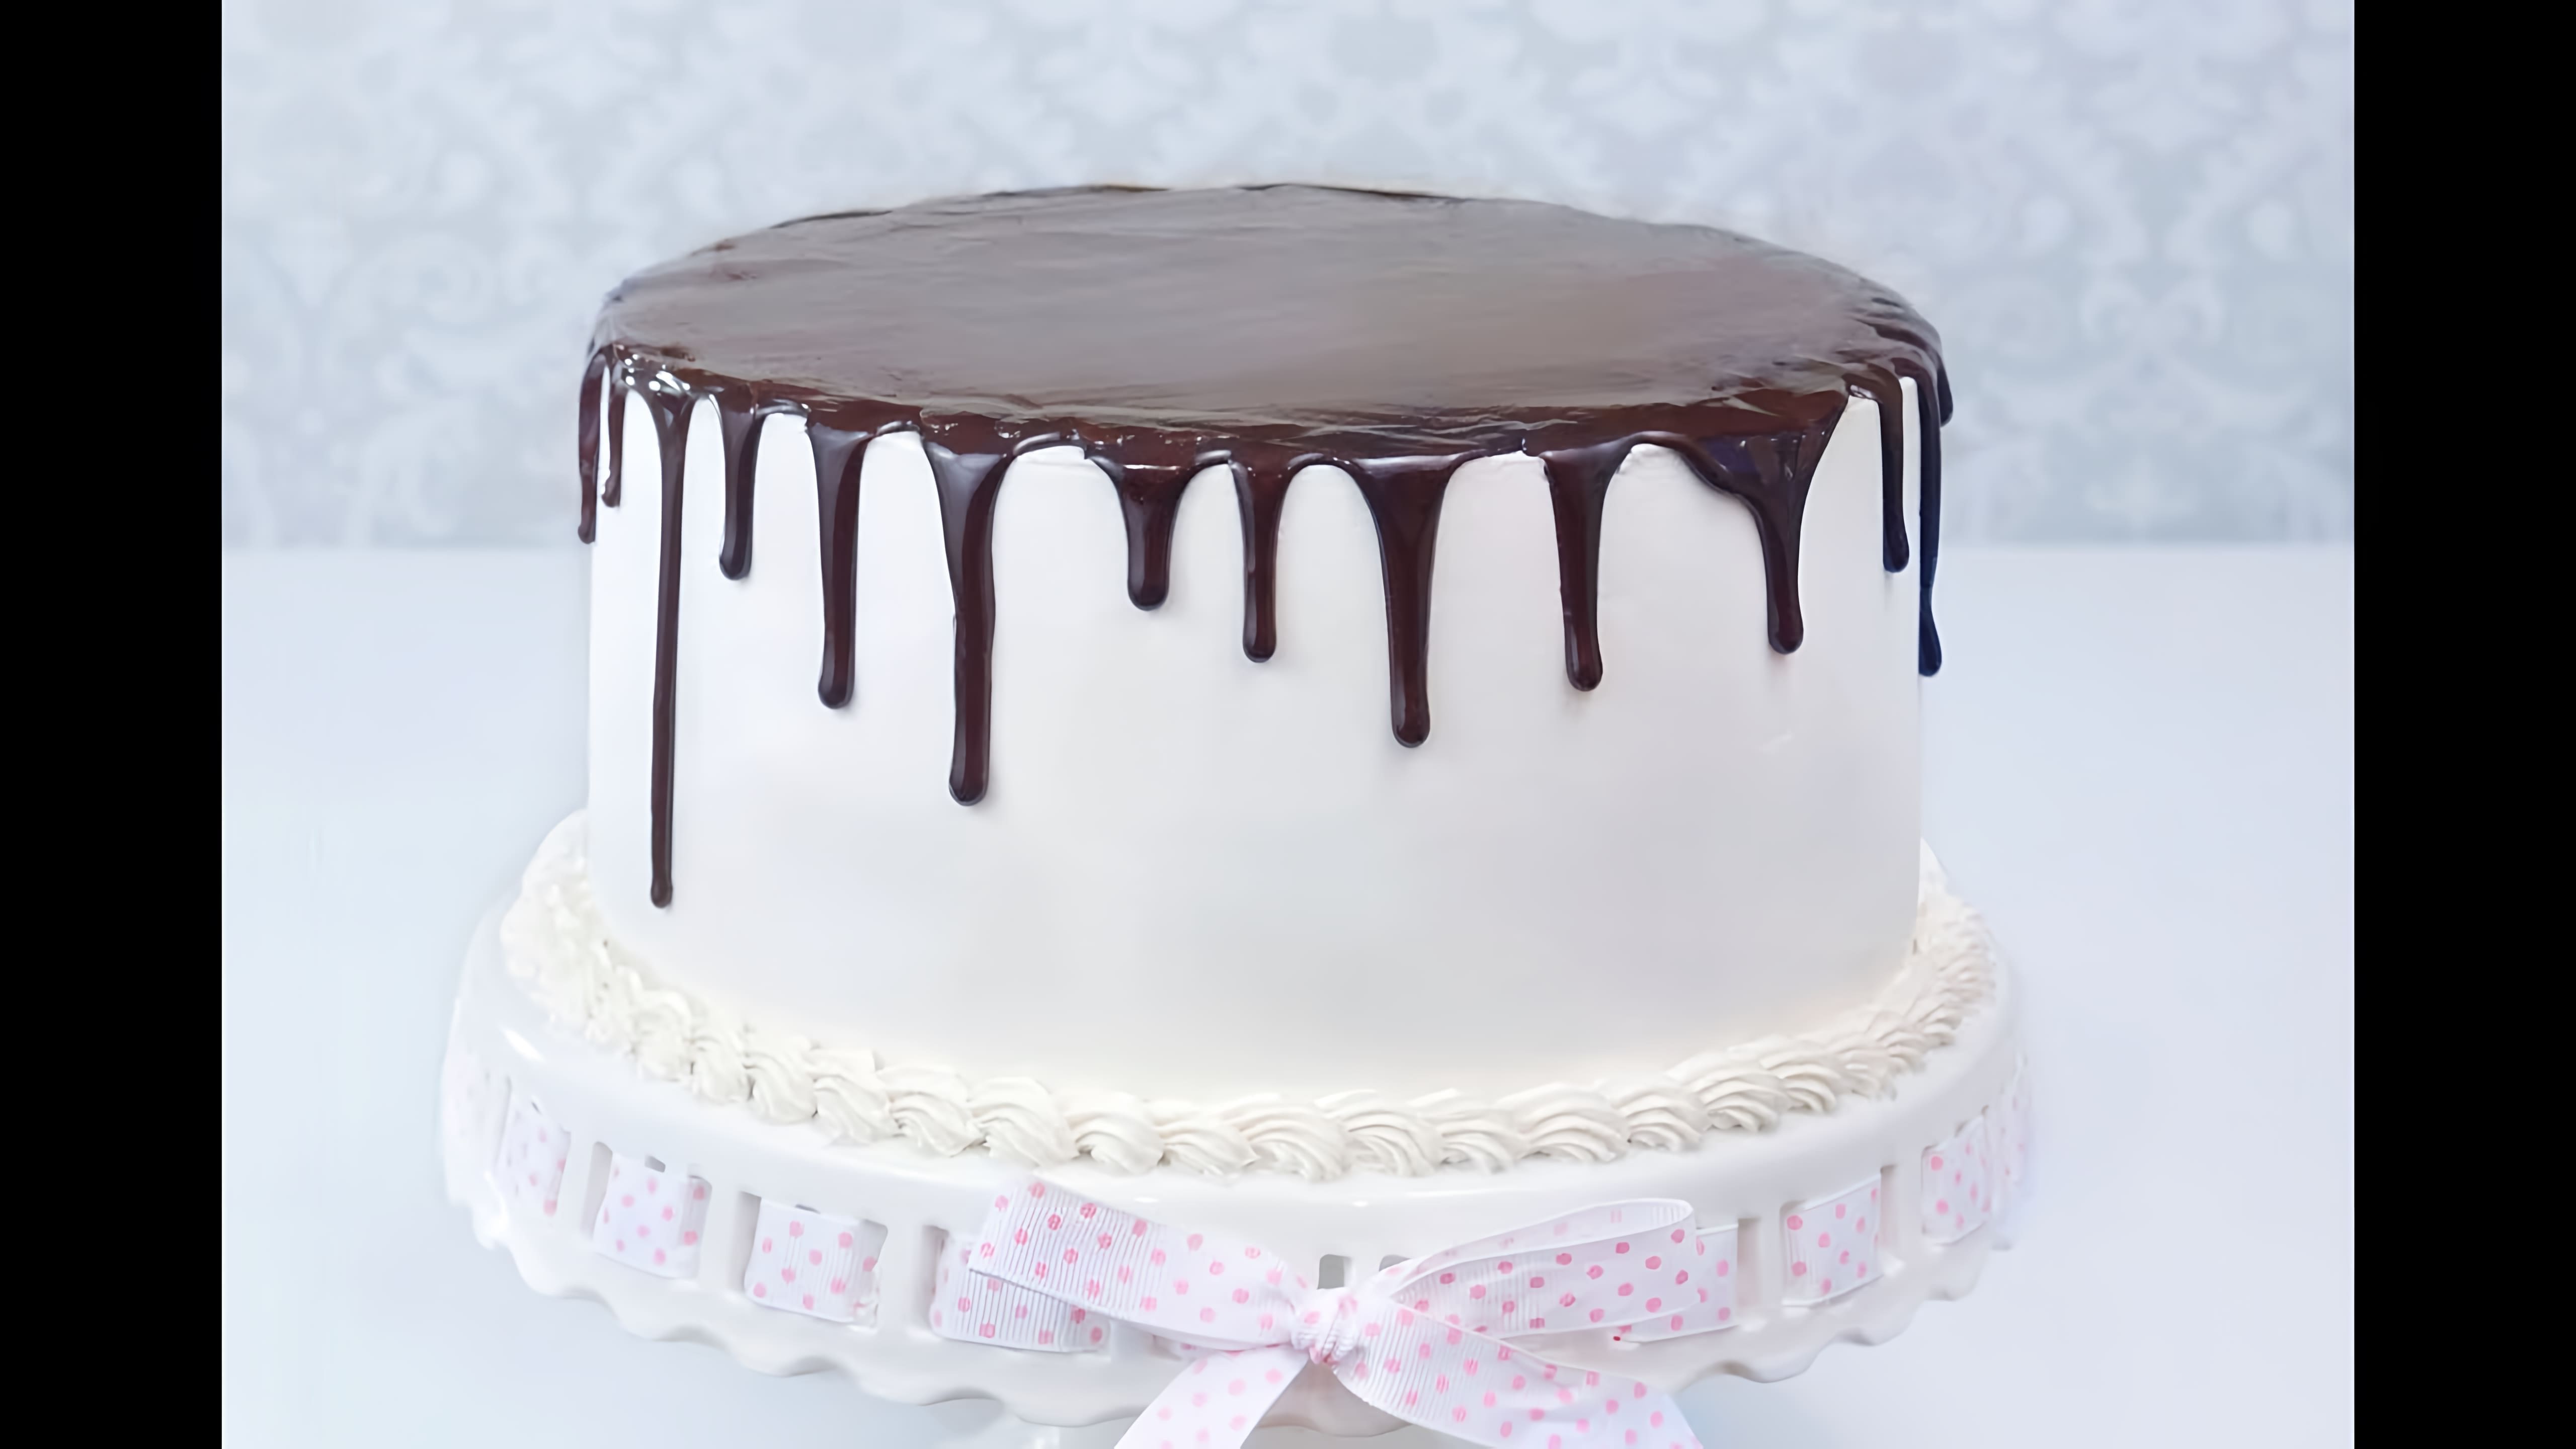 В этом видео кондитер делится двумя рецептами шоколадной глазури для создания идеальных шоколадных подтеков на торте